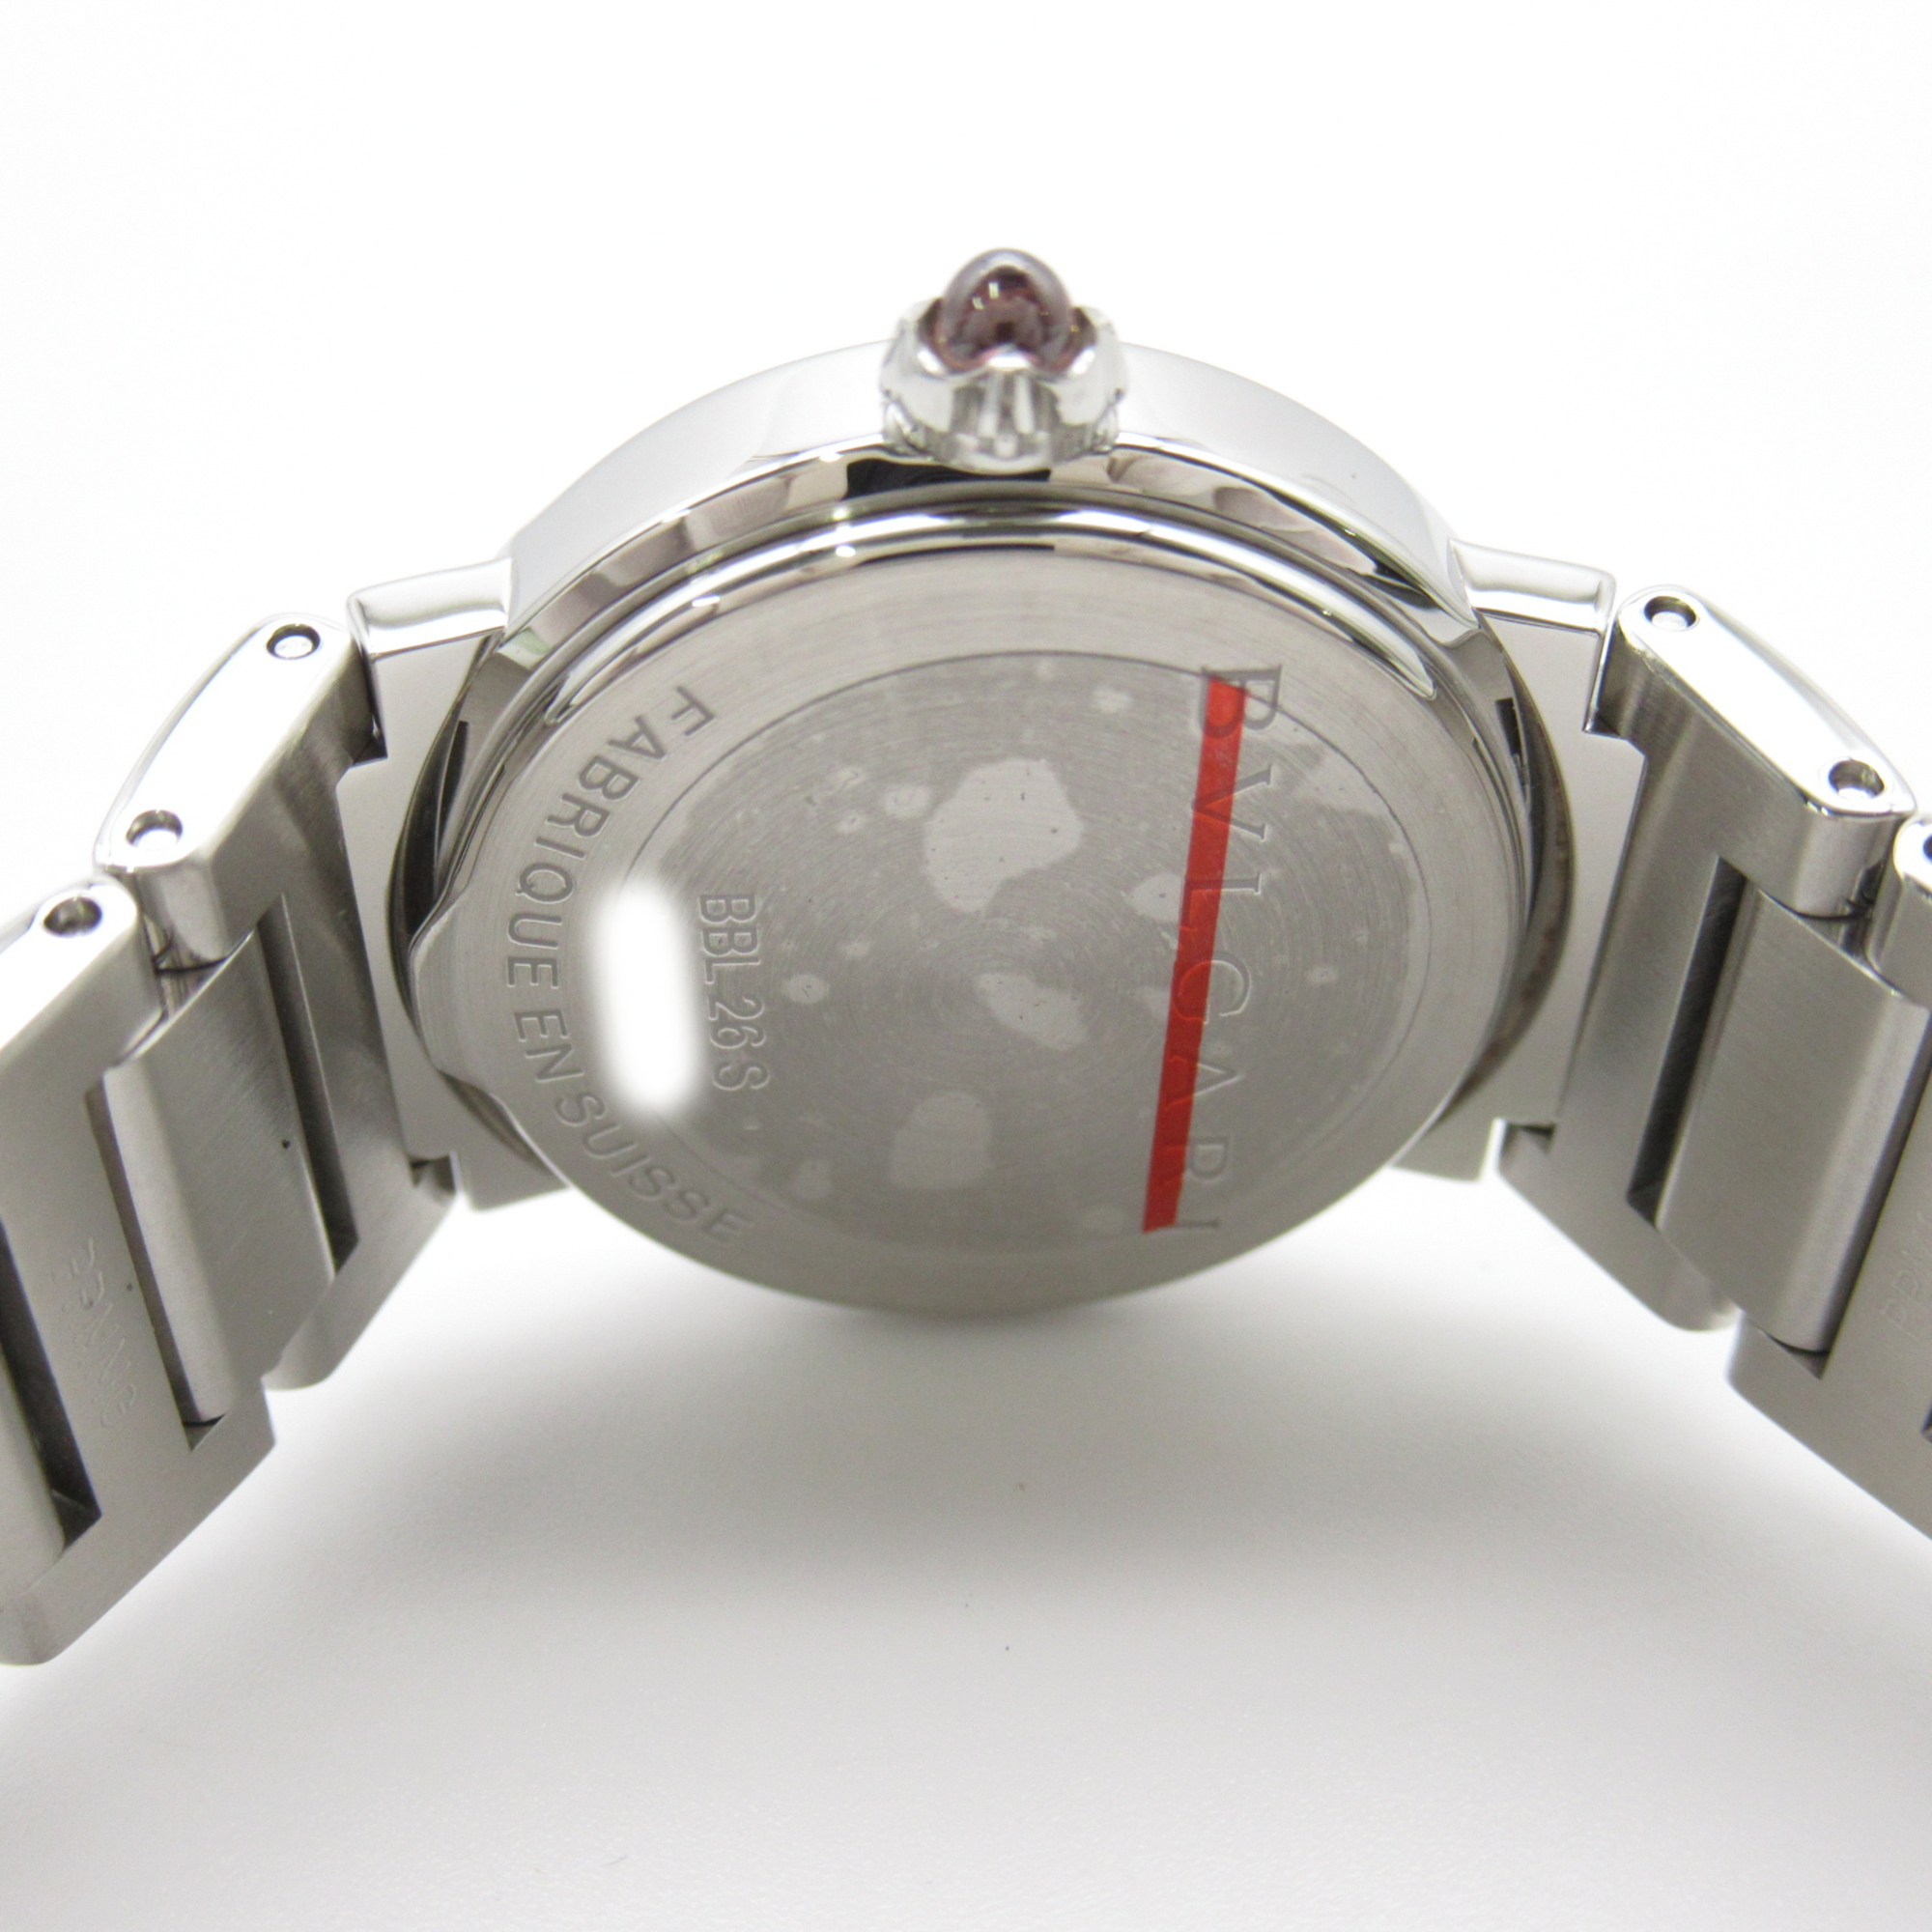 BVLGARI Bvlgari Bvlgari 12P diamond Wrist Watch watch Wrist Watch BBL26S Quartz White White shell Stainless Steel dia BBL26S